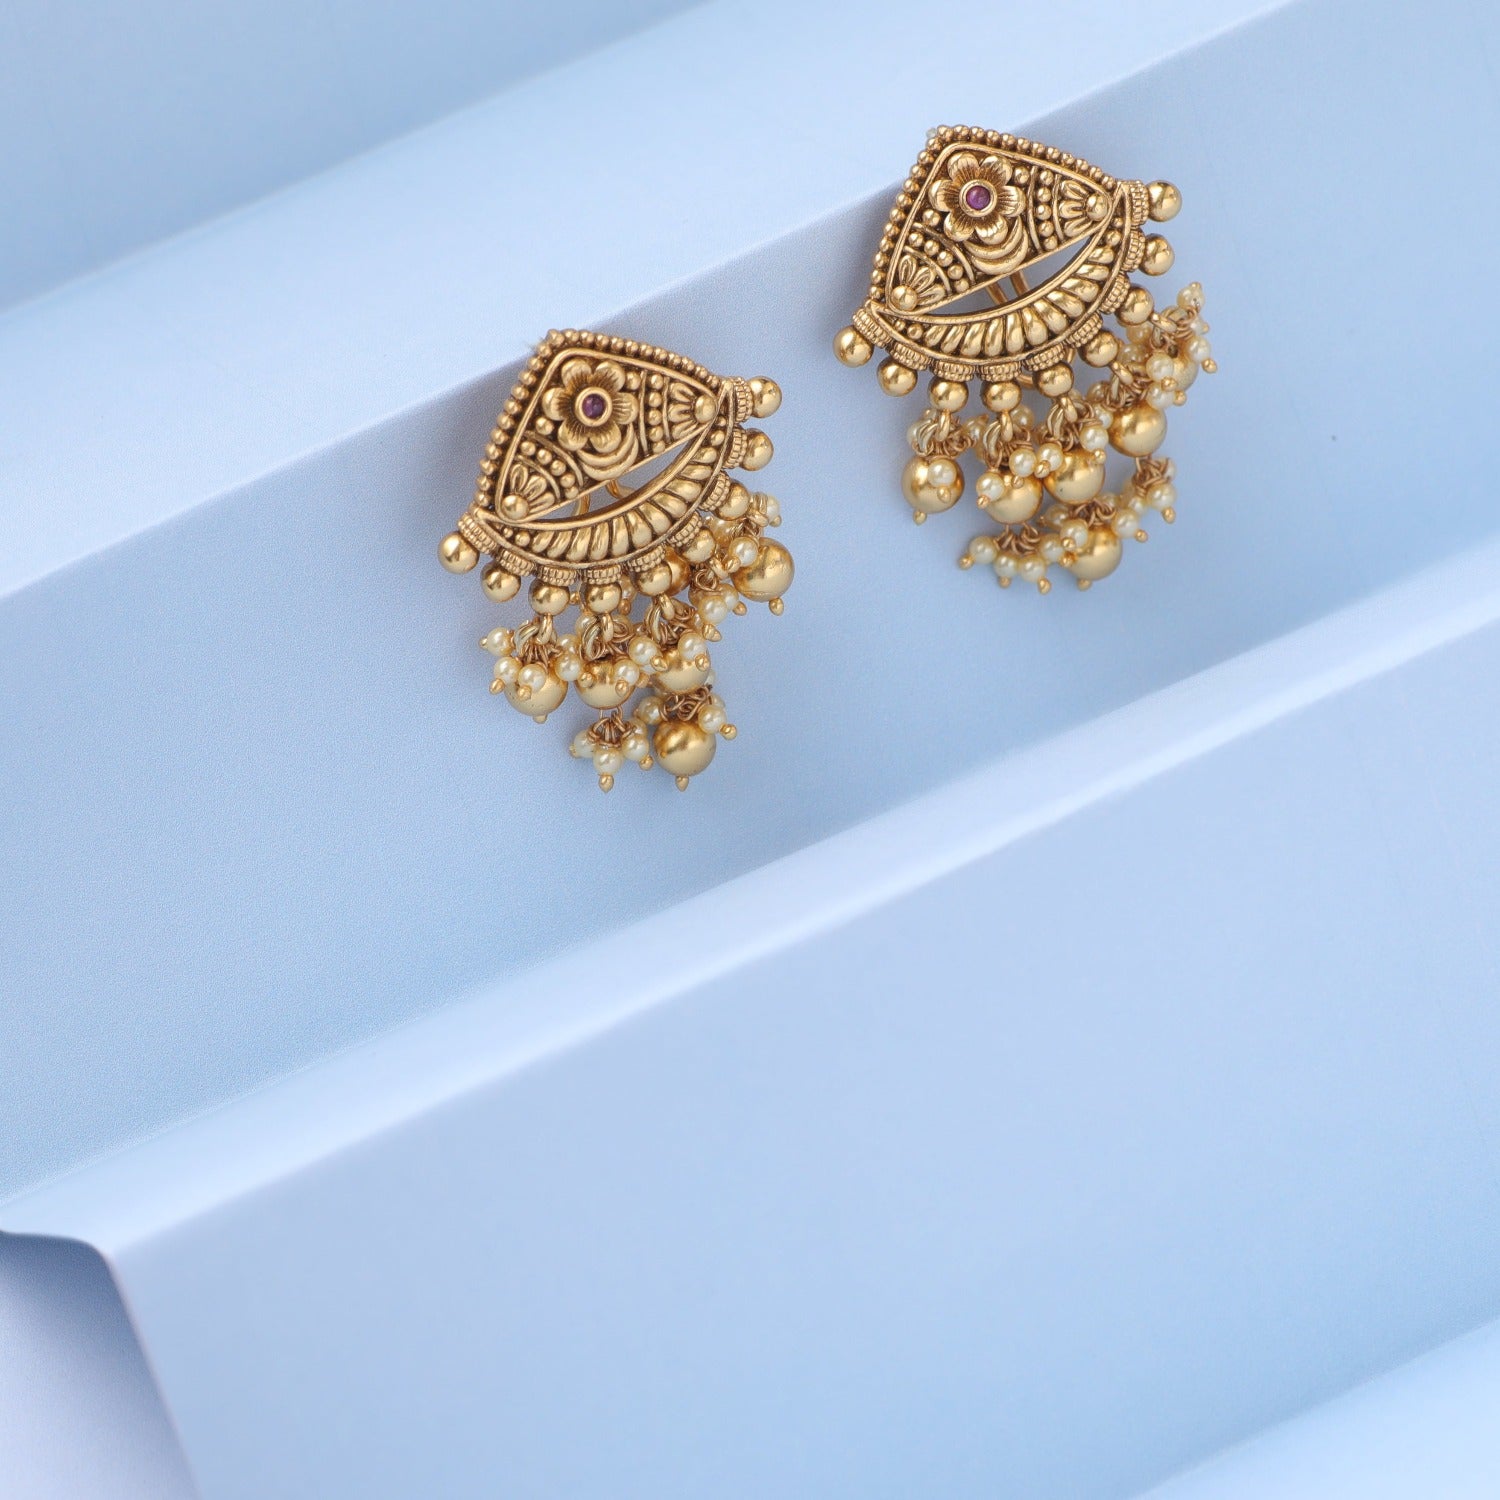 Small gold earrings || new model earrings designs 2022 - YouTube